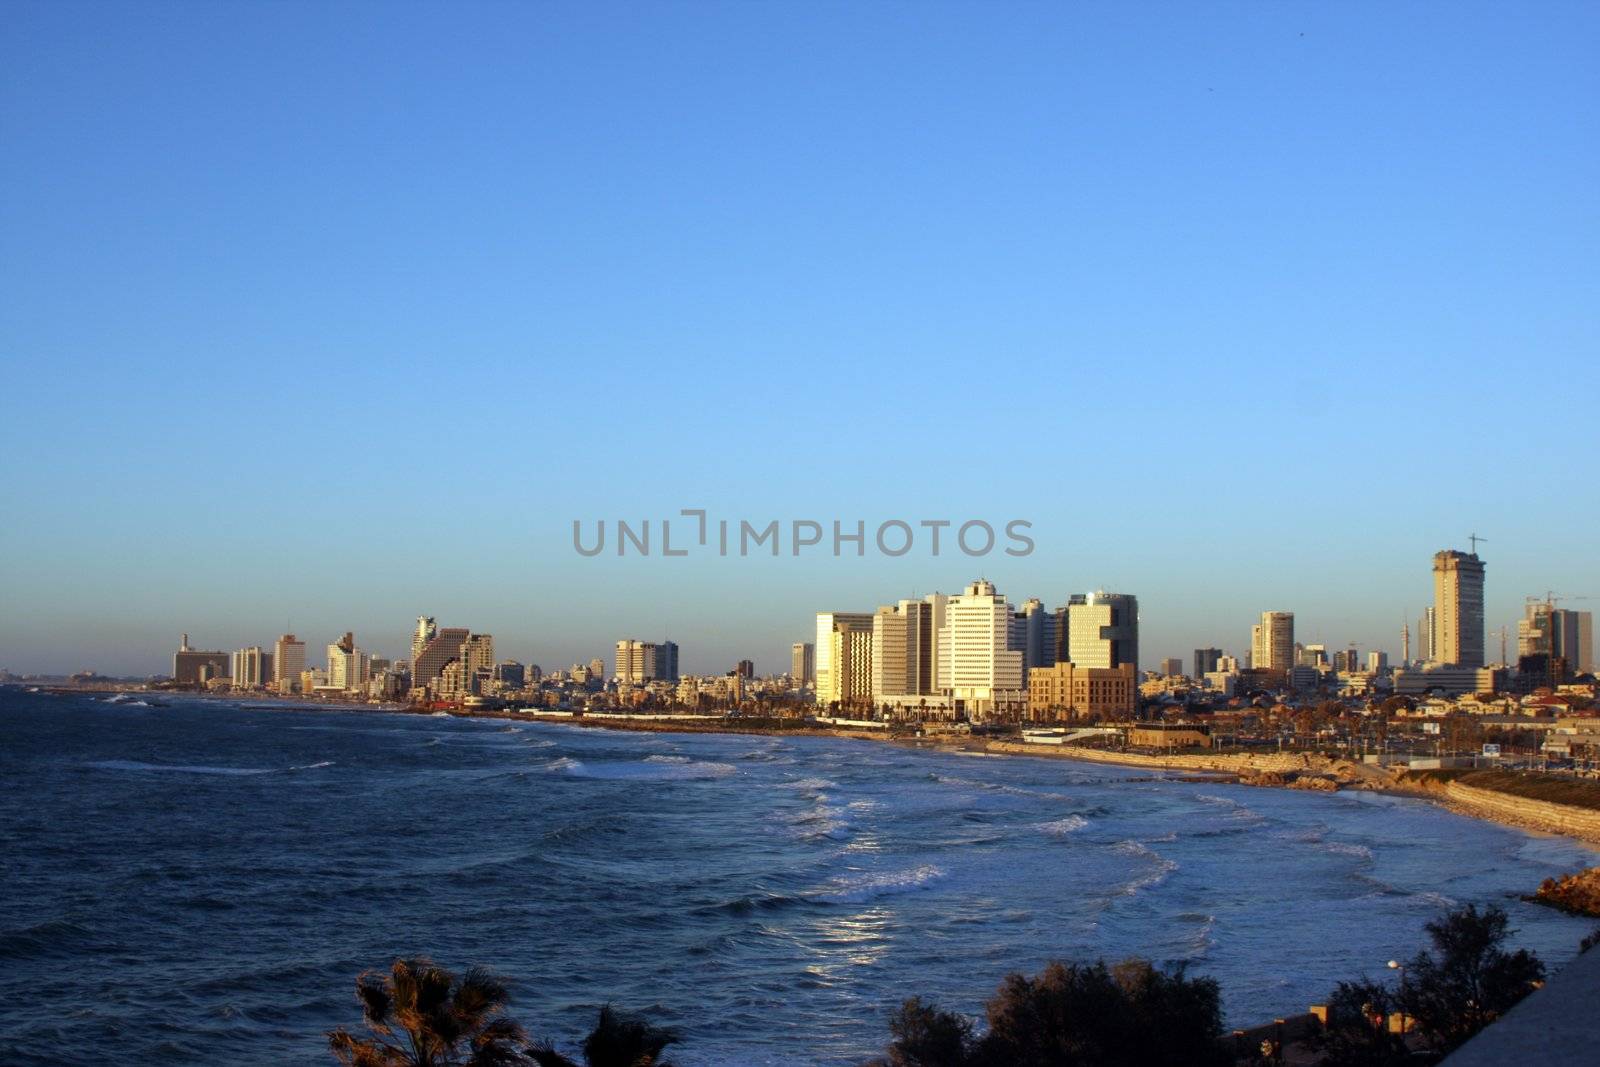 Tel Aviv view from Jaffa